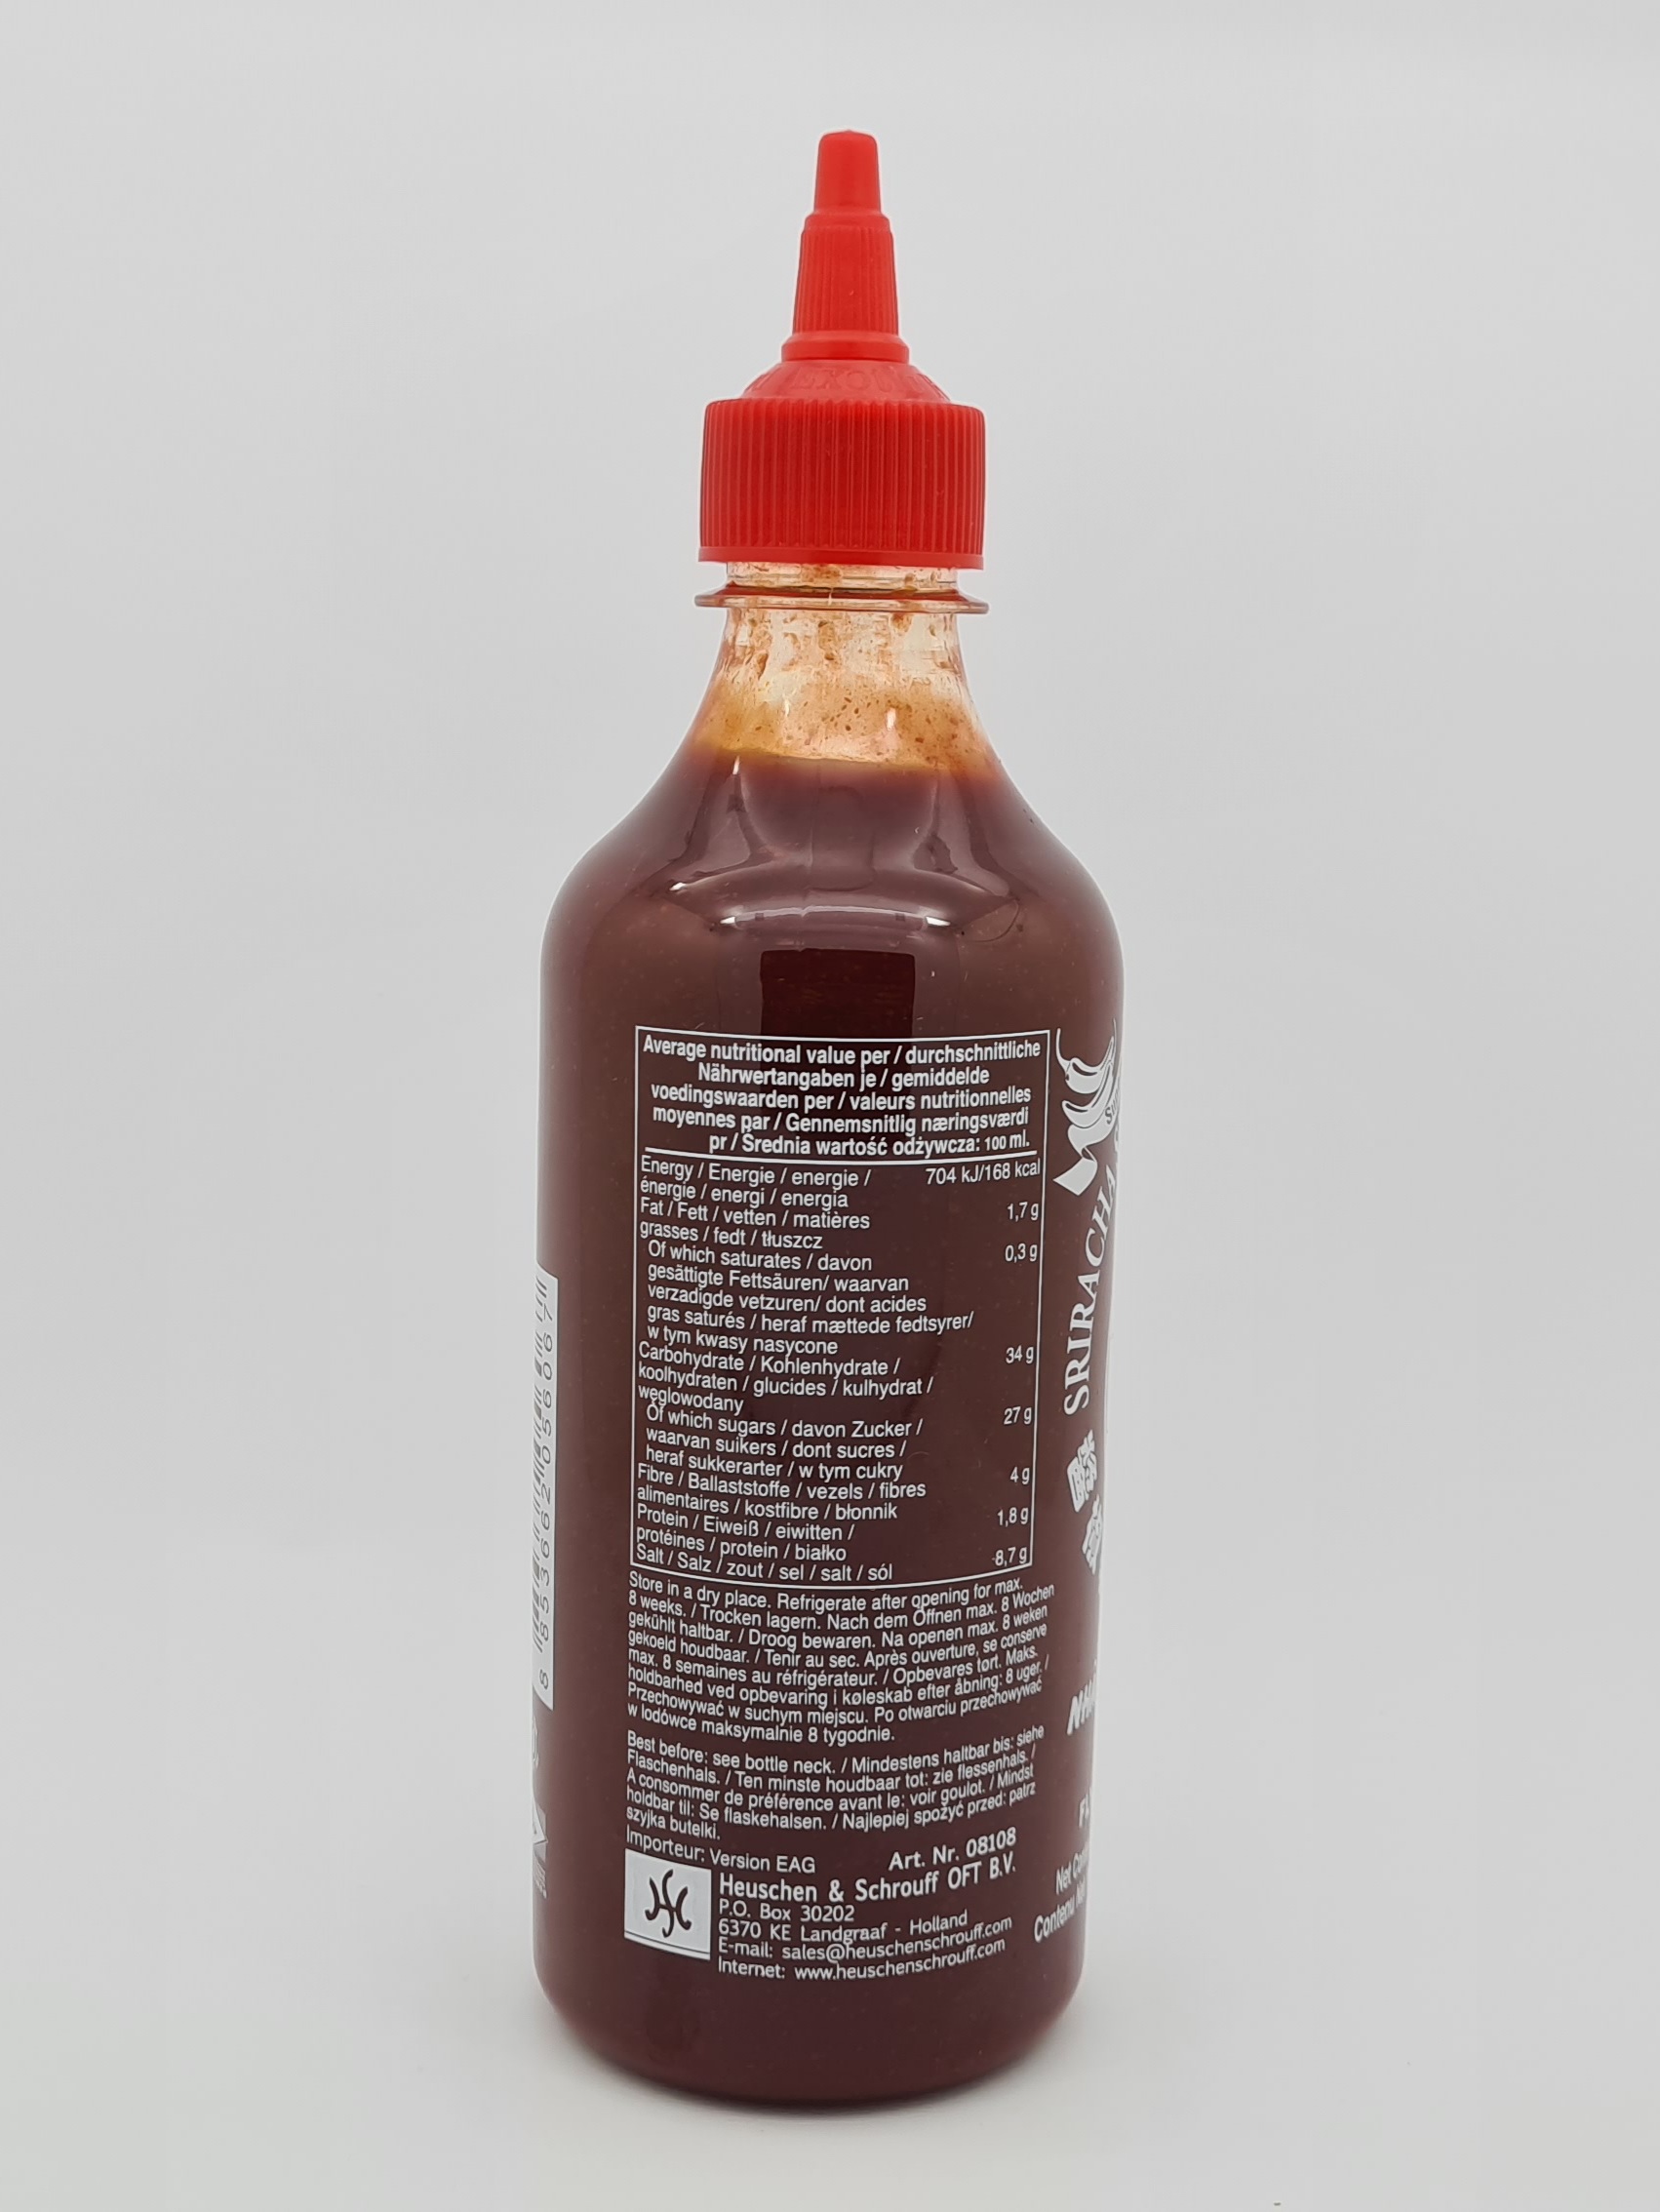 Extra pálivá čili omáčka Sriracha Flying Goose Brand 455 ml